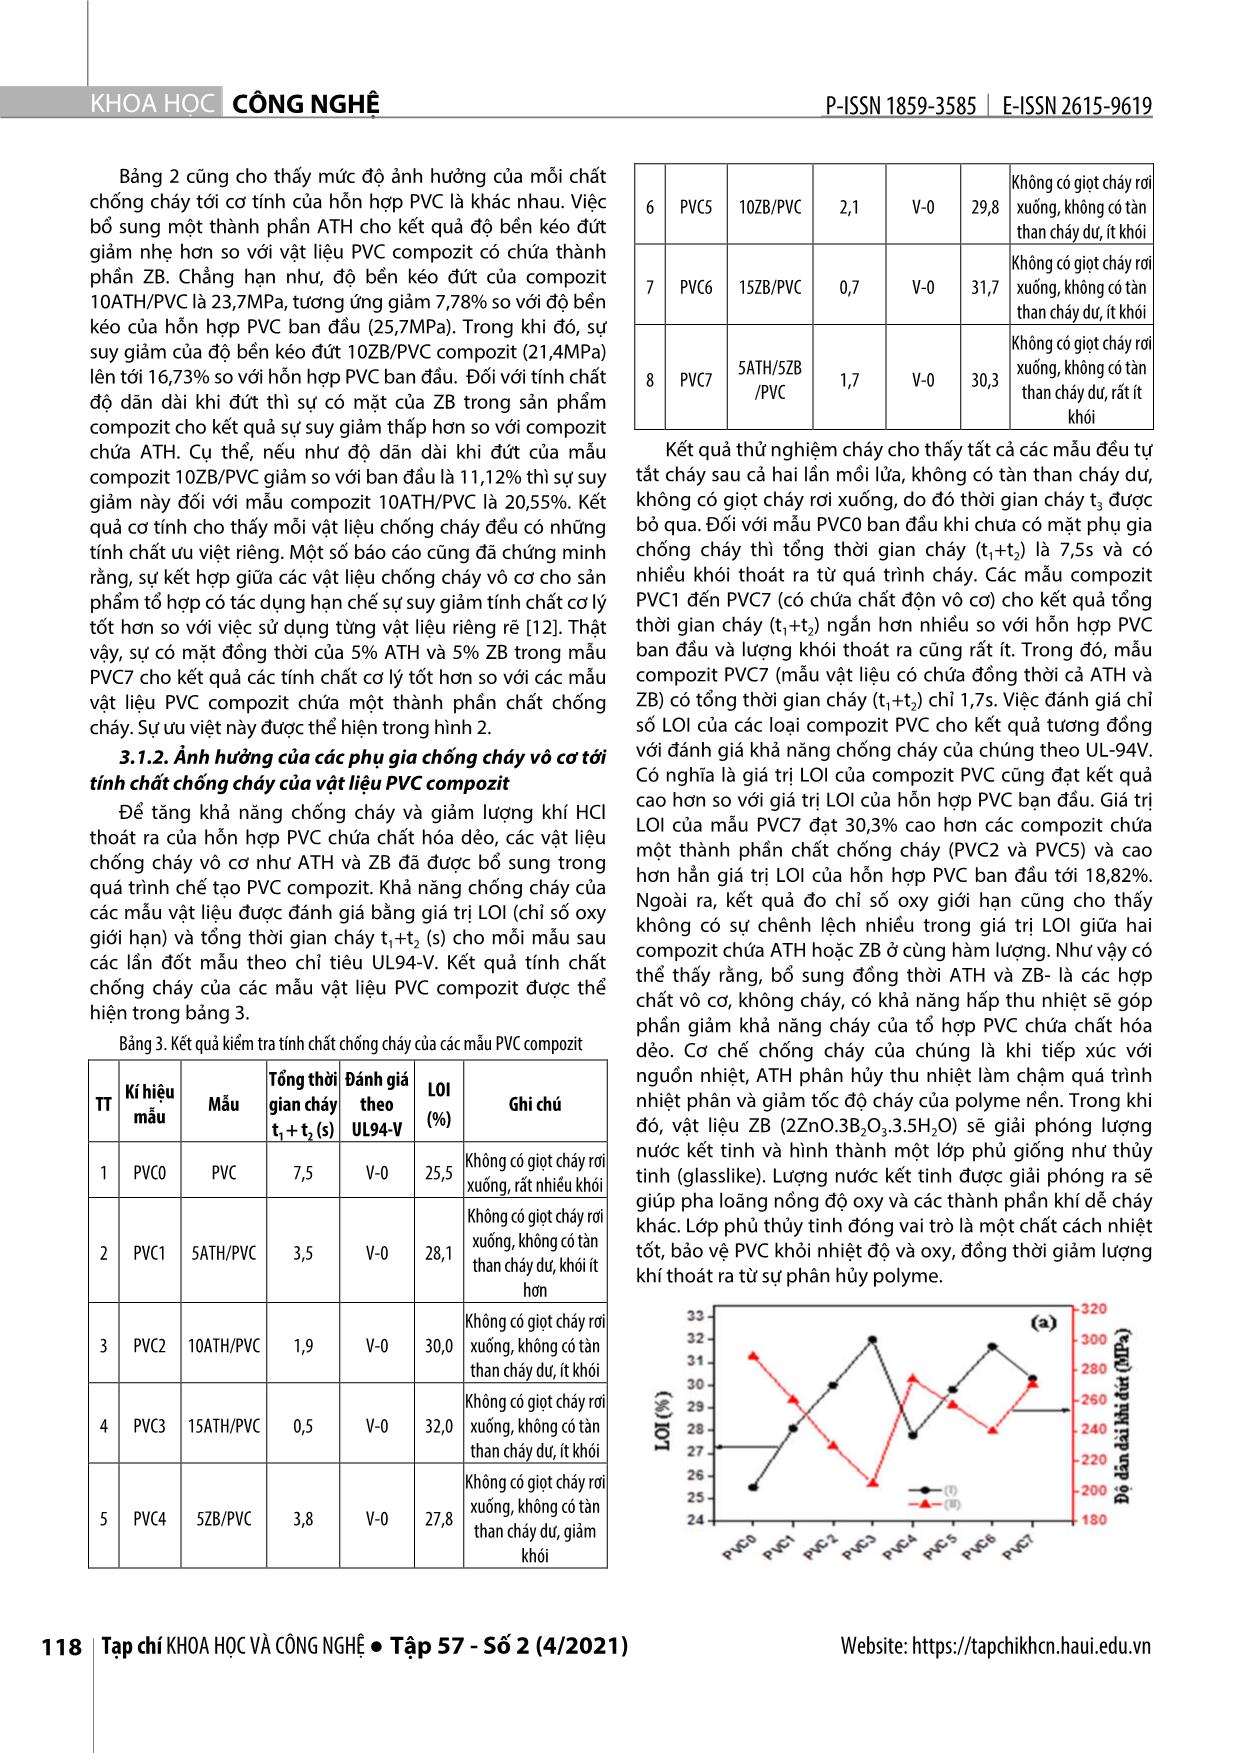 Chế tạo và đánh giá tính chất của vật liệu Nanocompozit chống cháy trên nền Polyvinyl Clorua trang 4